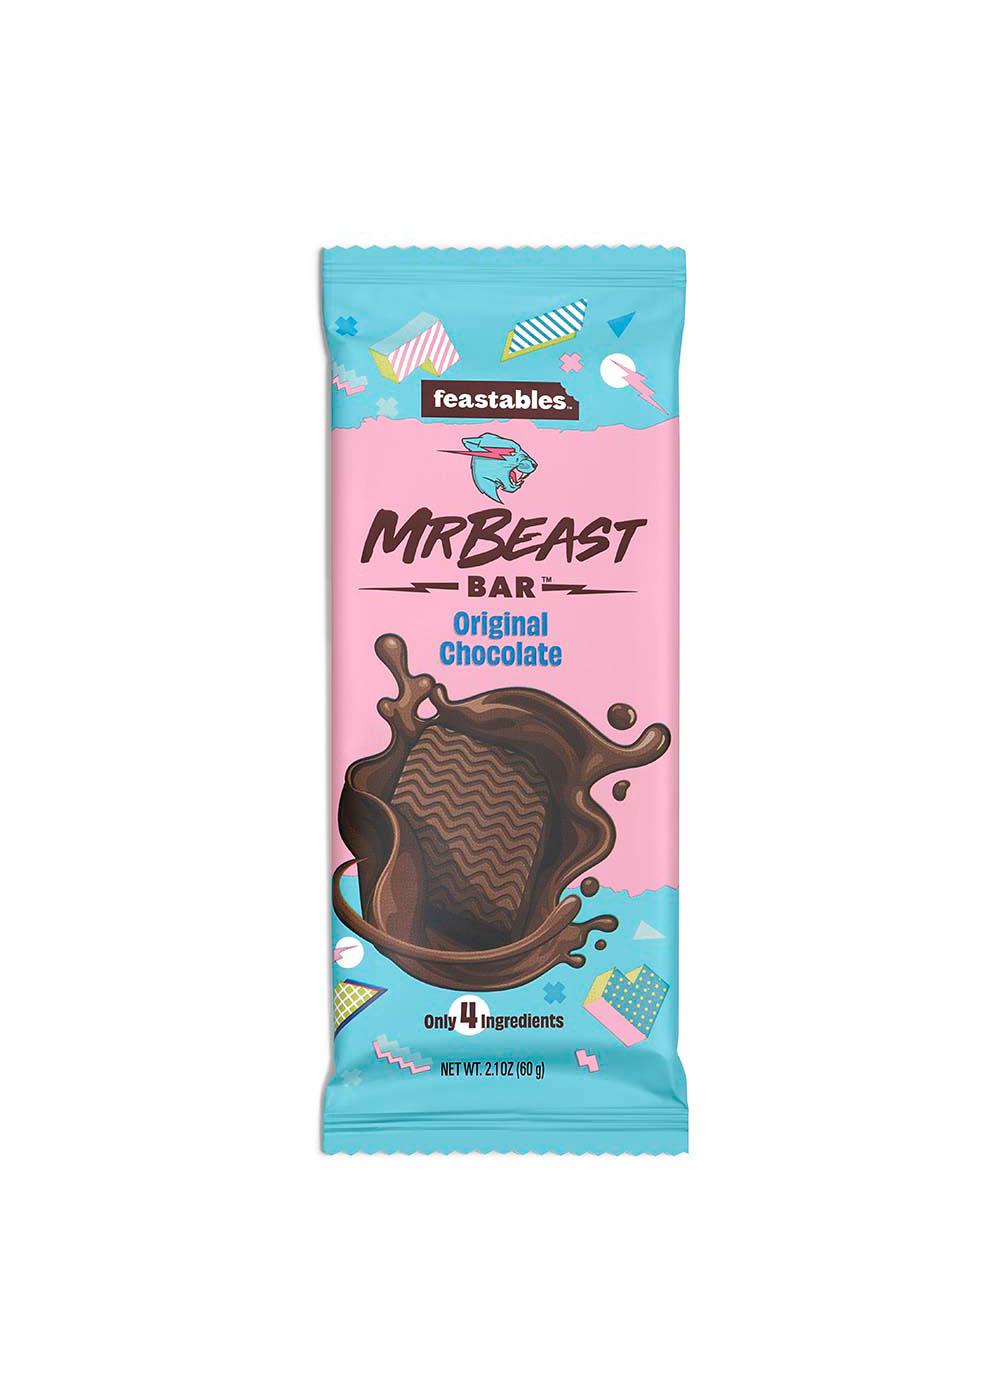 Feastables MrBeast Deez Nutz Peanut Butter Milk Chocolate Bar 2.1 oz 60g 1  Bar